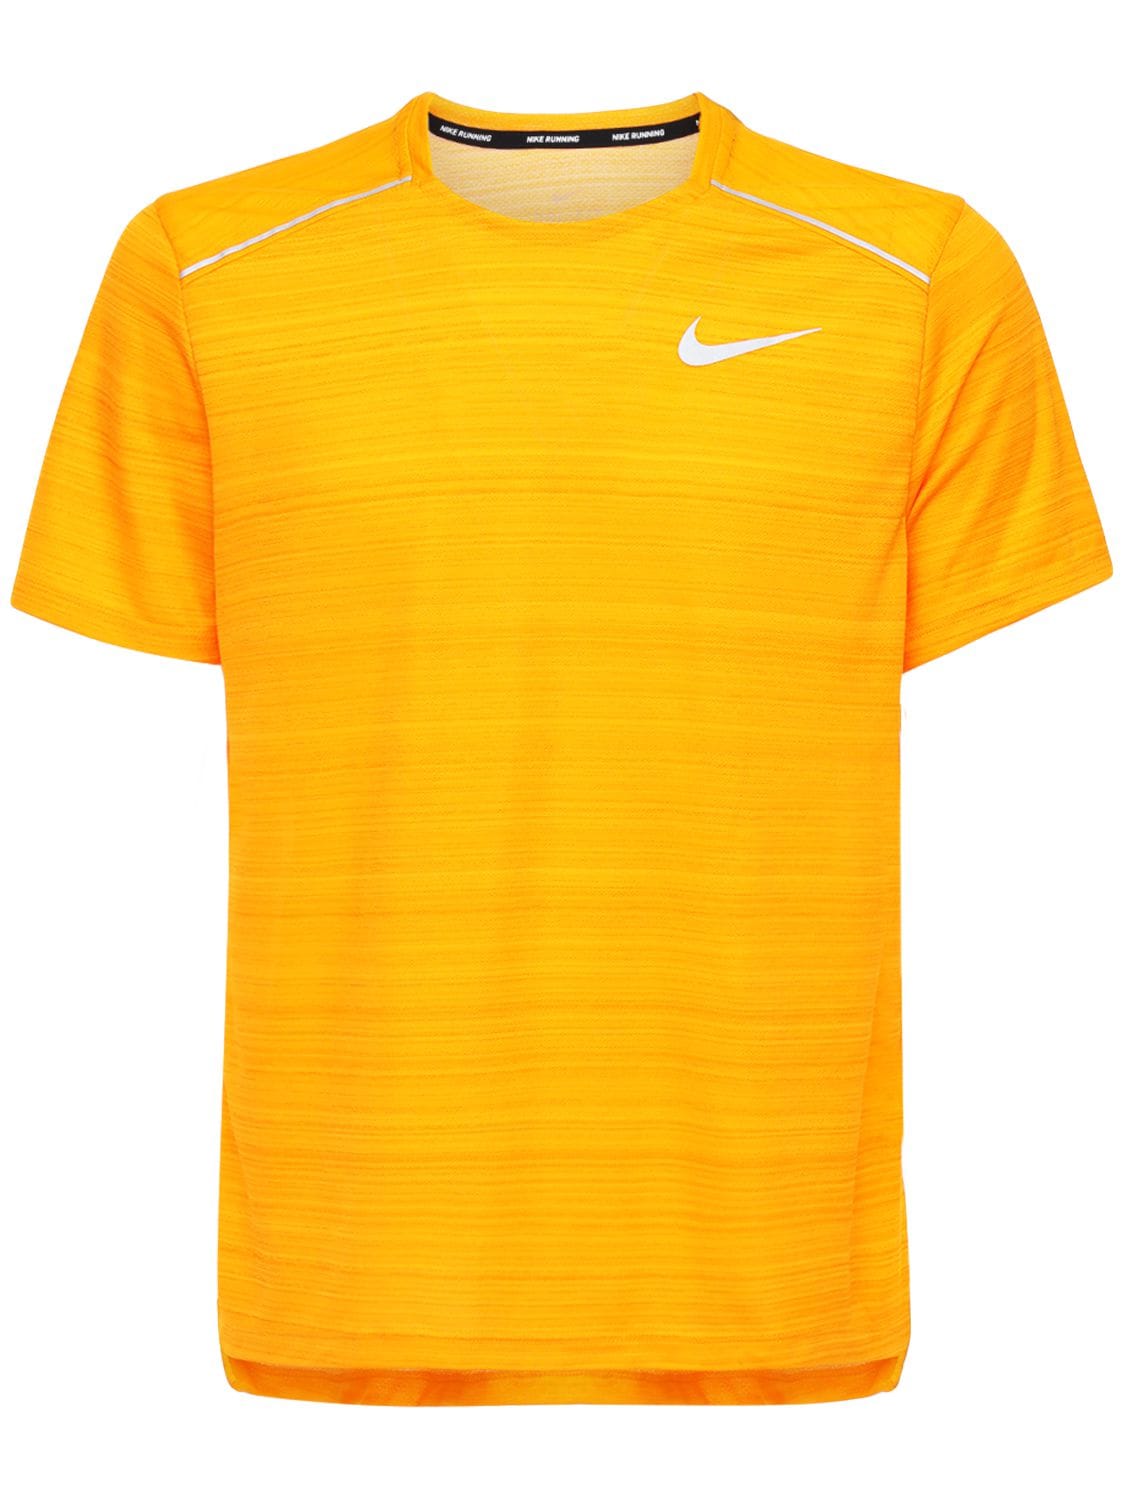 Nike Dri-fit Miler Running T-shirt In Orange